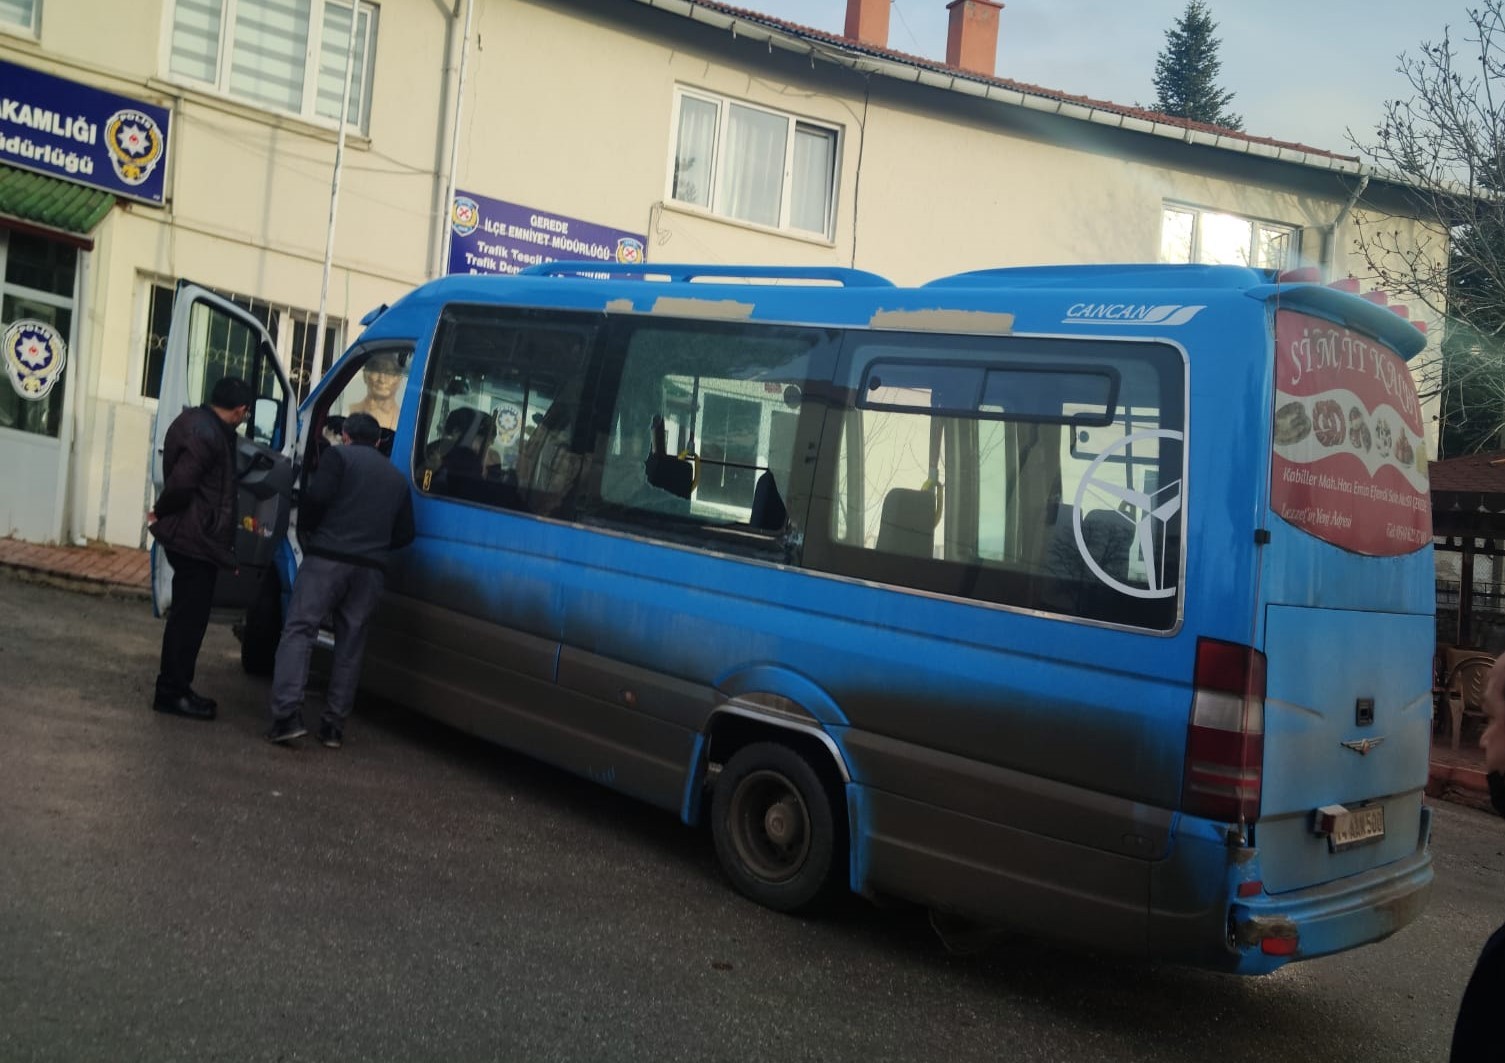 13 öğrencinin bulunduğu dolmuşa silahlı saldırı #bolu